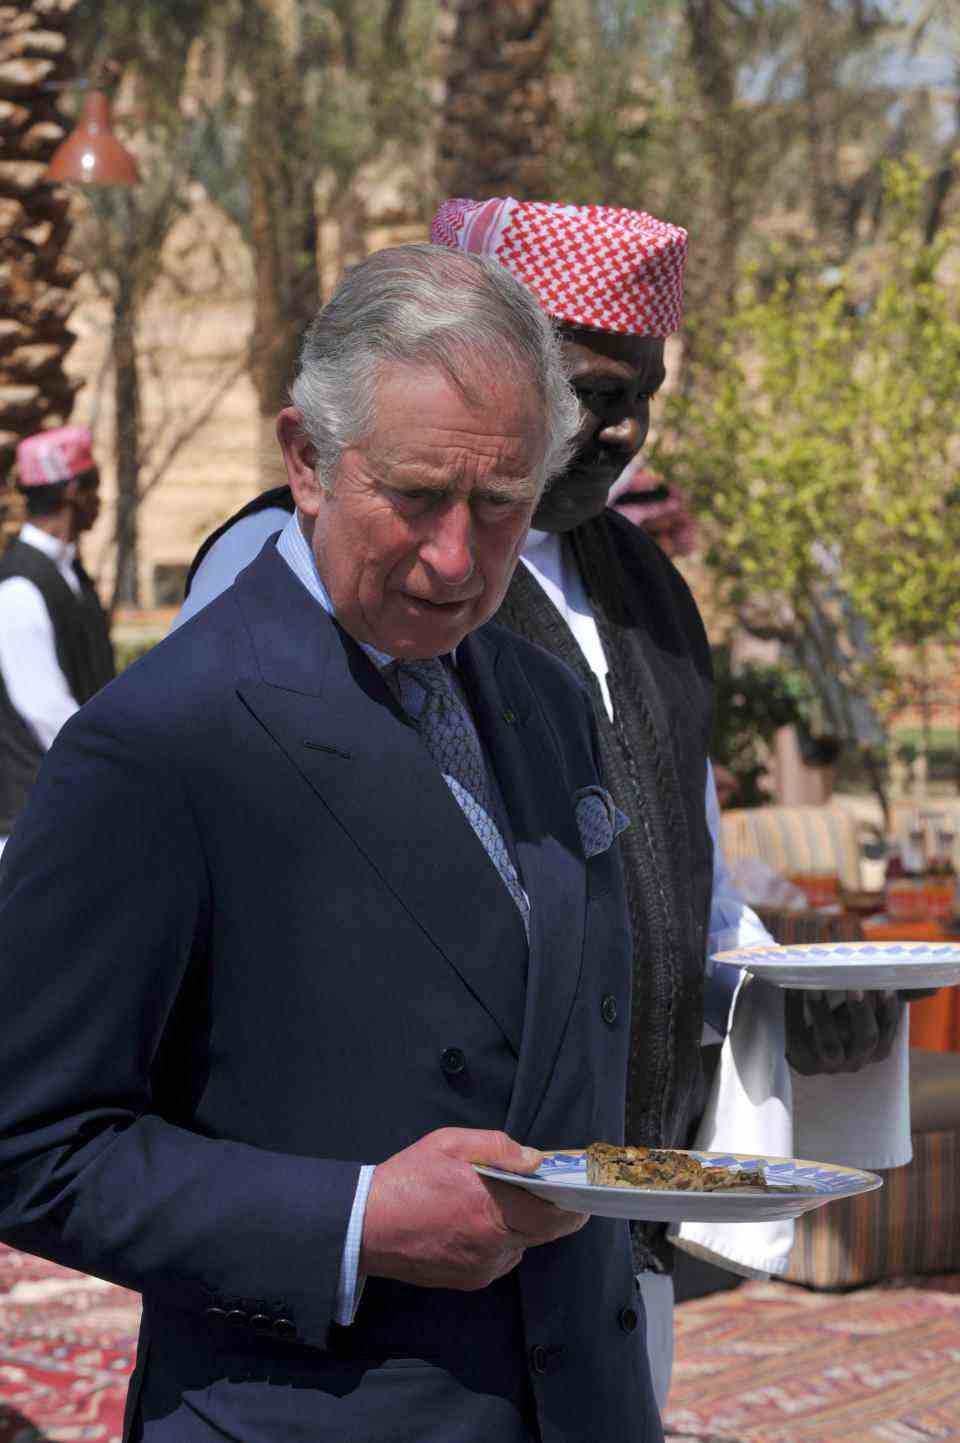 Le prince Charles de Grande-Bretagne tient une assiette devant un buffet lors d'une pause déjeuner le 19 février 2014 dans le cadre d'une visite sur un site historique à al-Diriyah, à la périphérie nord-ouest de la capitale saoudienne, Riyad.  Charles est en Arabie Saoudite en visite privée.  AFP PHOTO/ POOL / FAYEZ NURELDINE (Photo by Fayez Nureldine / POOL / AFP) (Photo by FAYEZ NURELDINE/POOL/AFP via Getty Images)